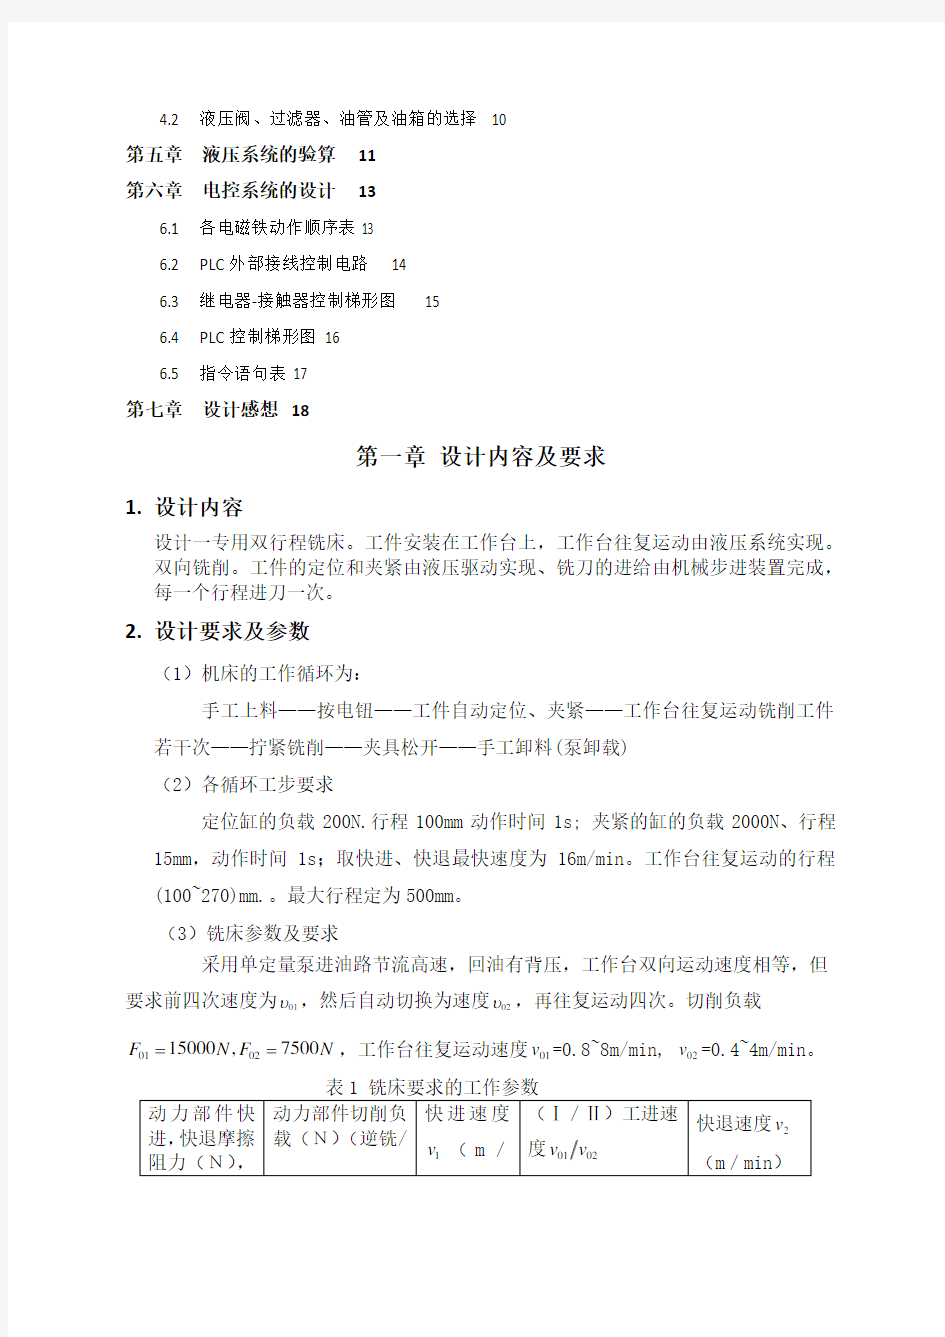 华中科技大学 液压传动课程设计说明书 完整版